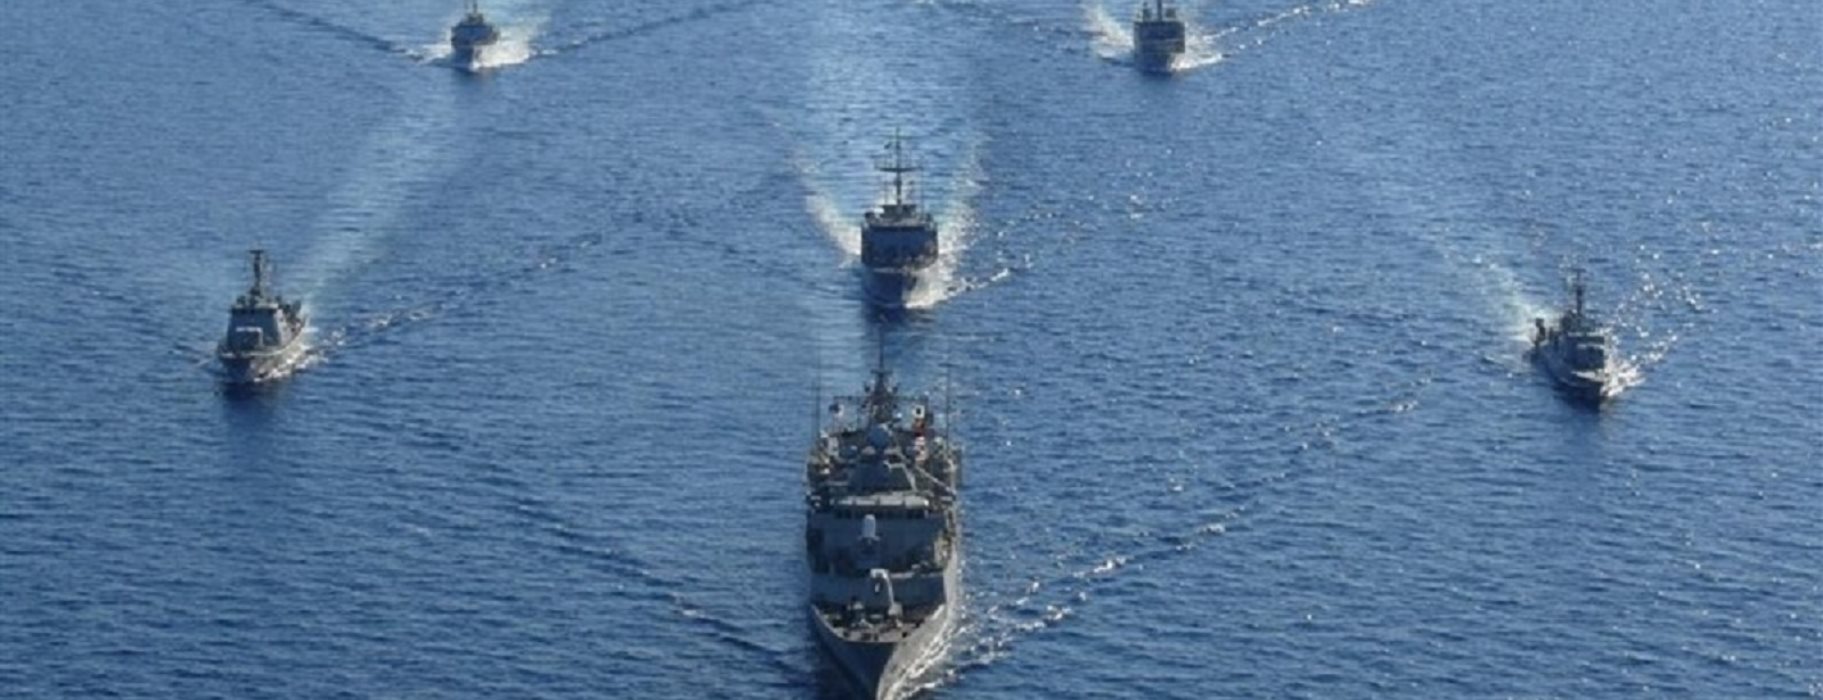 ΝΑΤΟ: Εξέδωσε Navtex για κοινή ναυτική άσκηση στην ανατολική Μεσόγειο